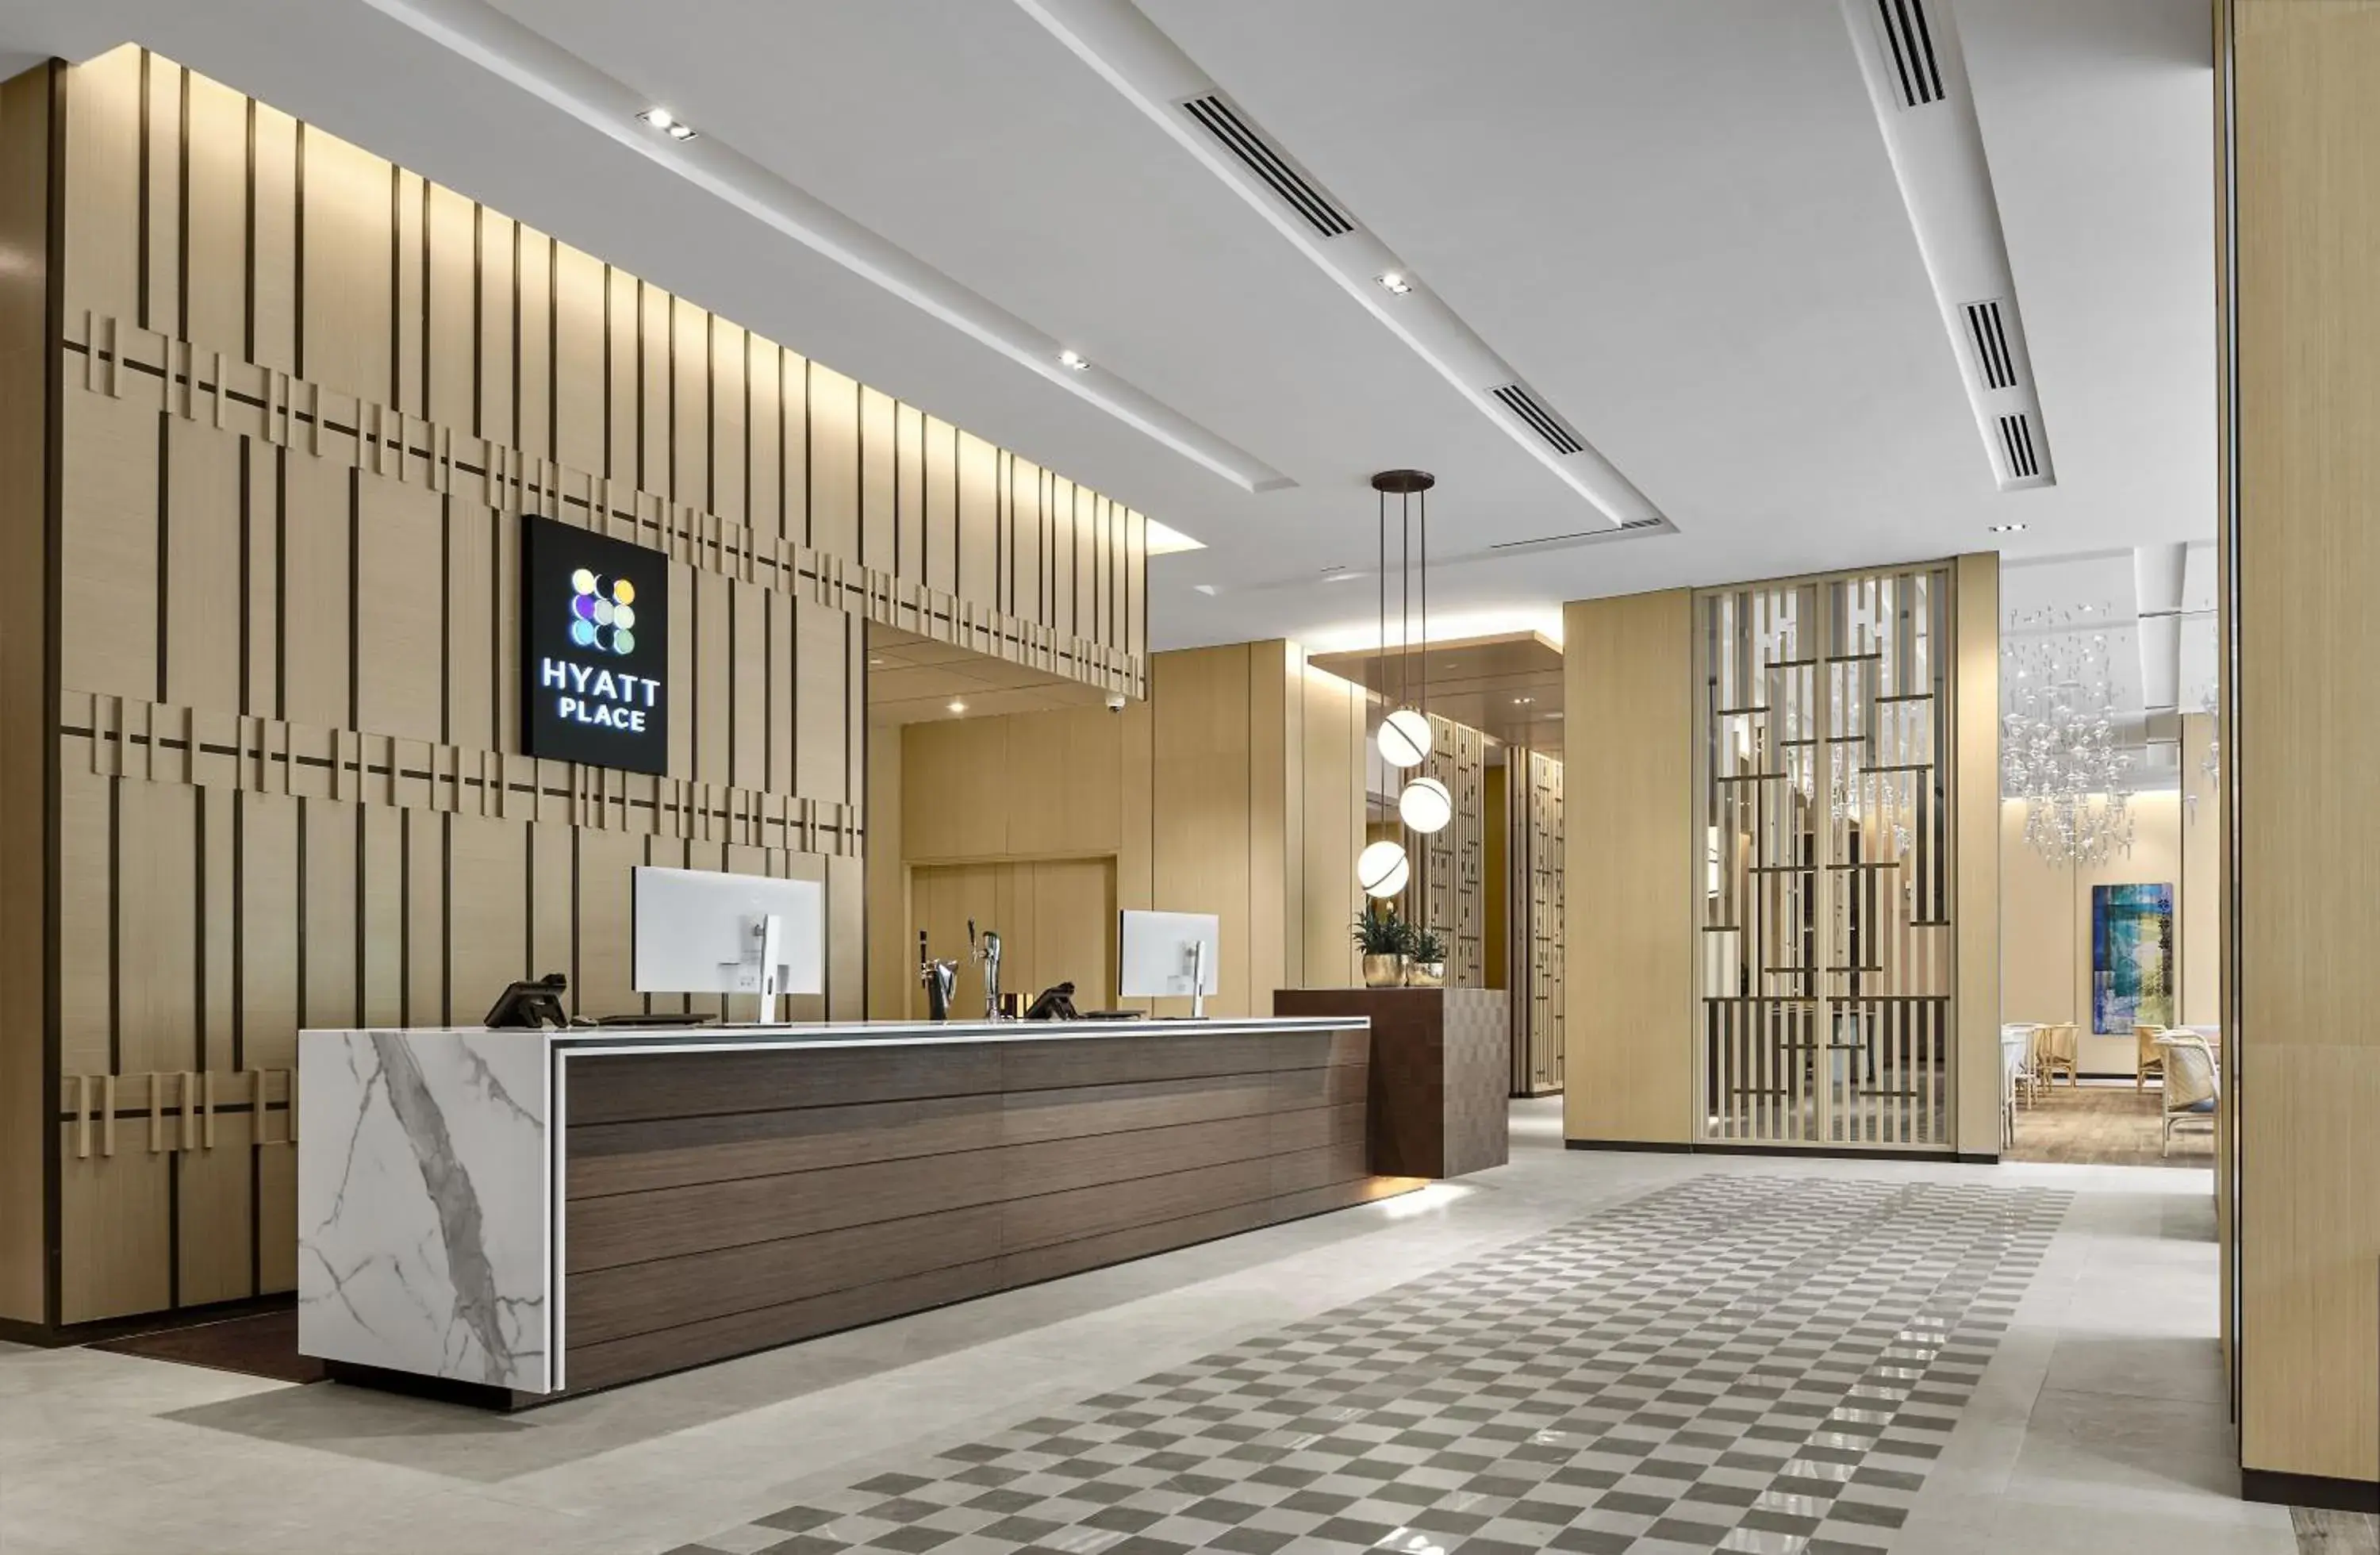 Lobby or reception, Lobby/Reception in Hyatt Place Johor Bahru Paradigm Mall